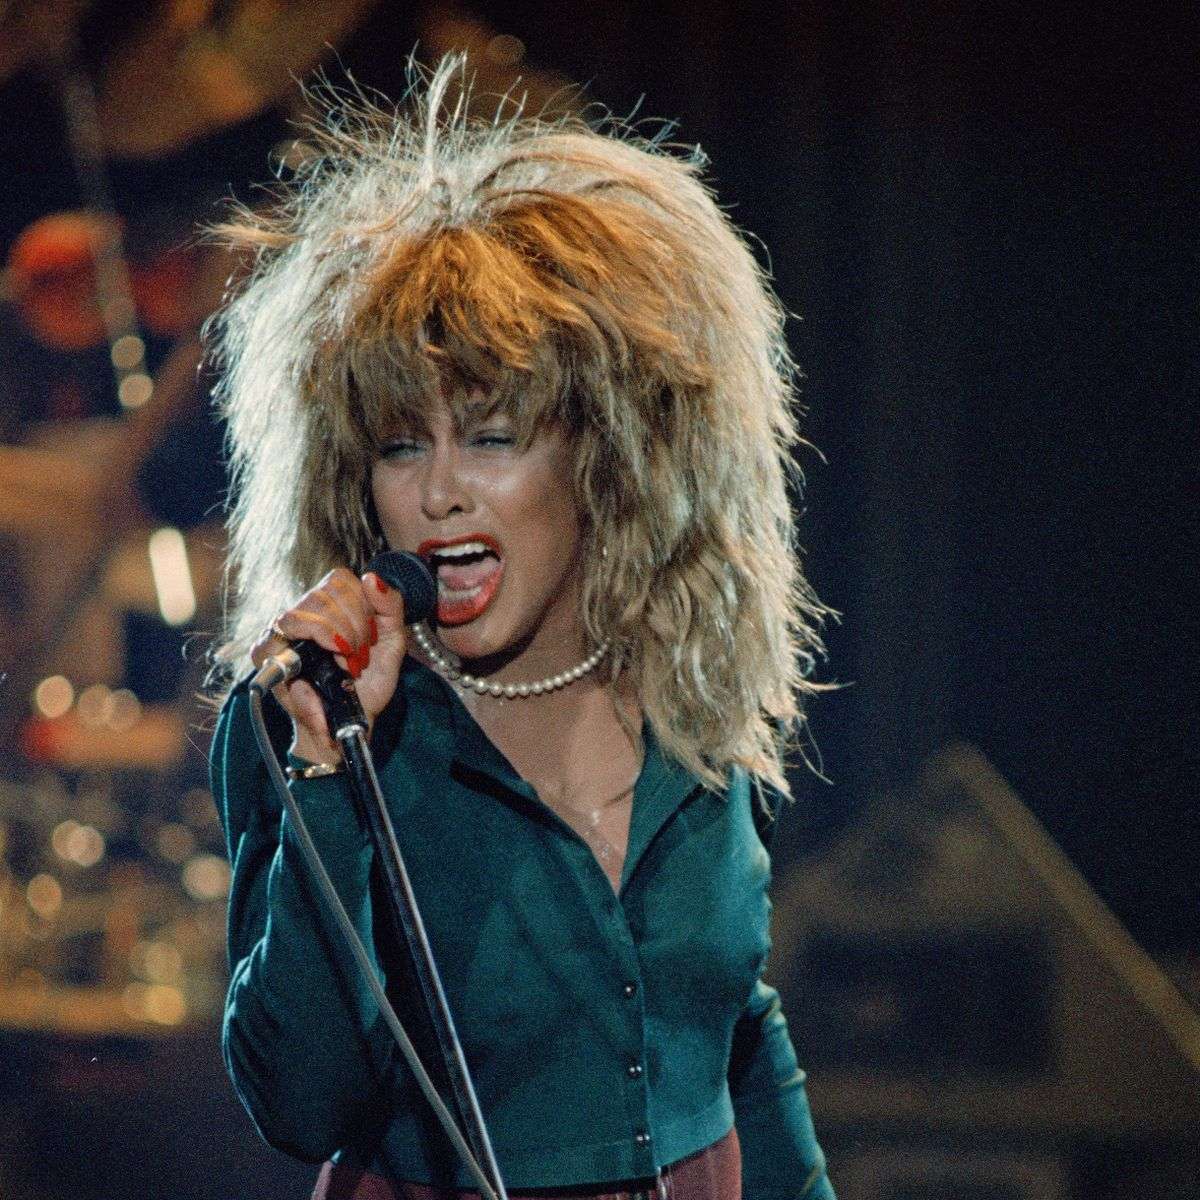 Murió Tina Turner, la legendaria "reina del rock", a los 83 años